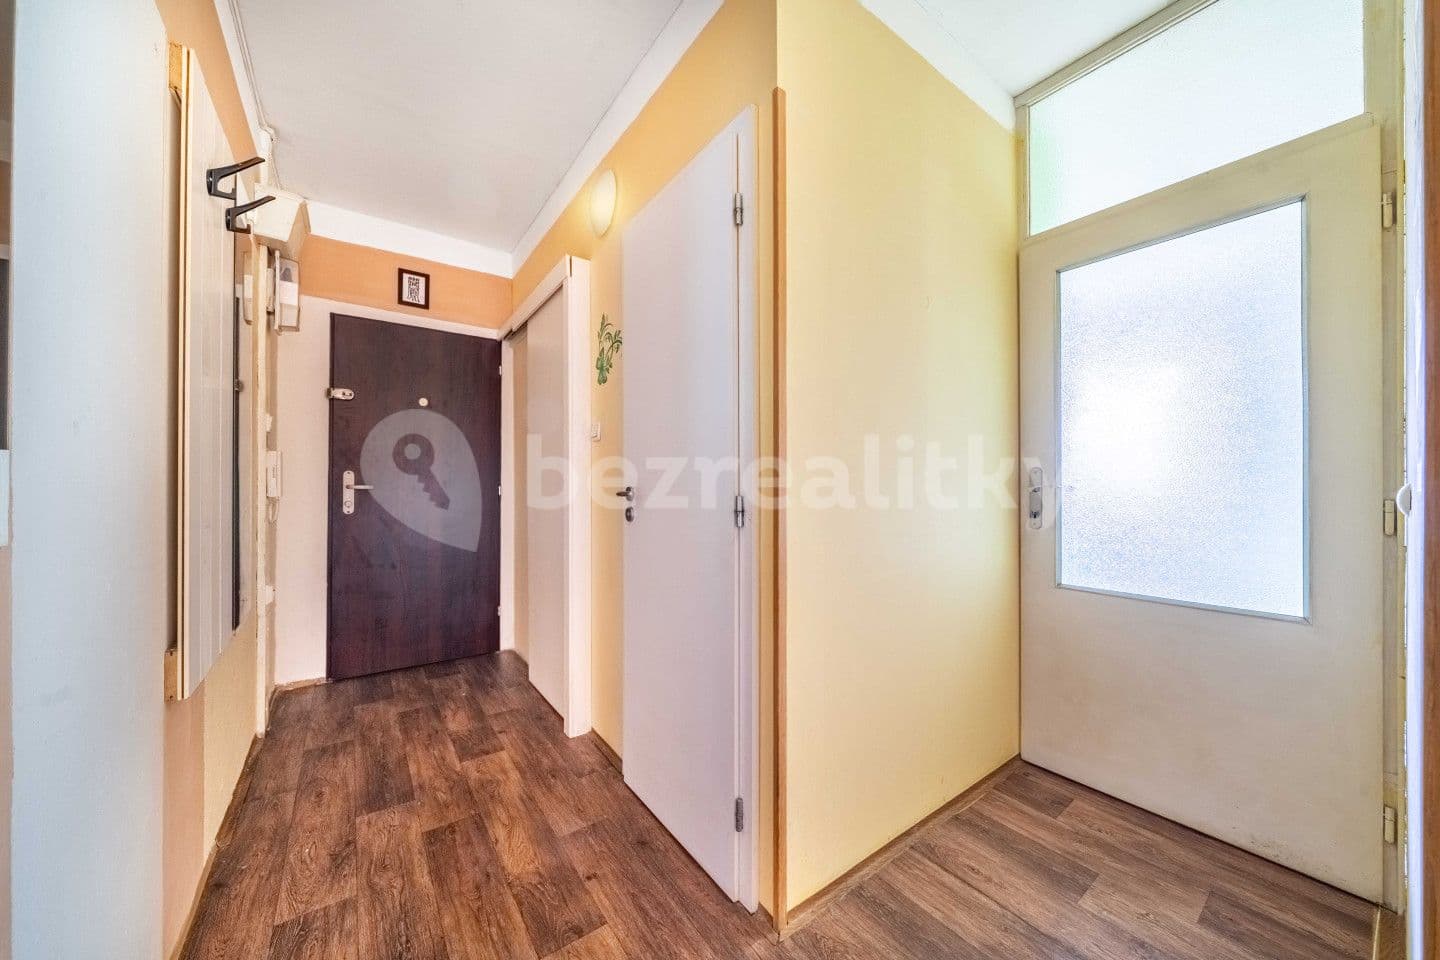 3 bedroom flat for sale, 75 m², Mládežnická, Jirkov, Ústecký Region